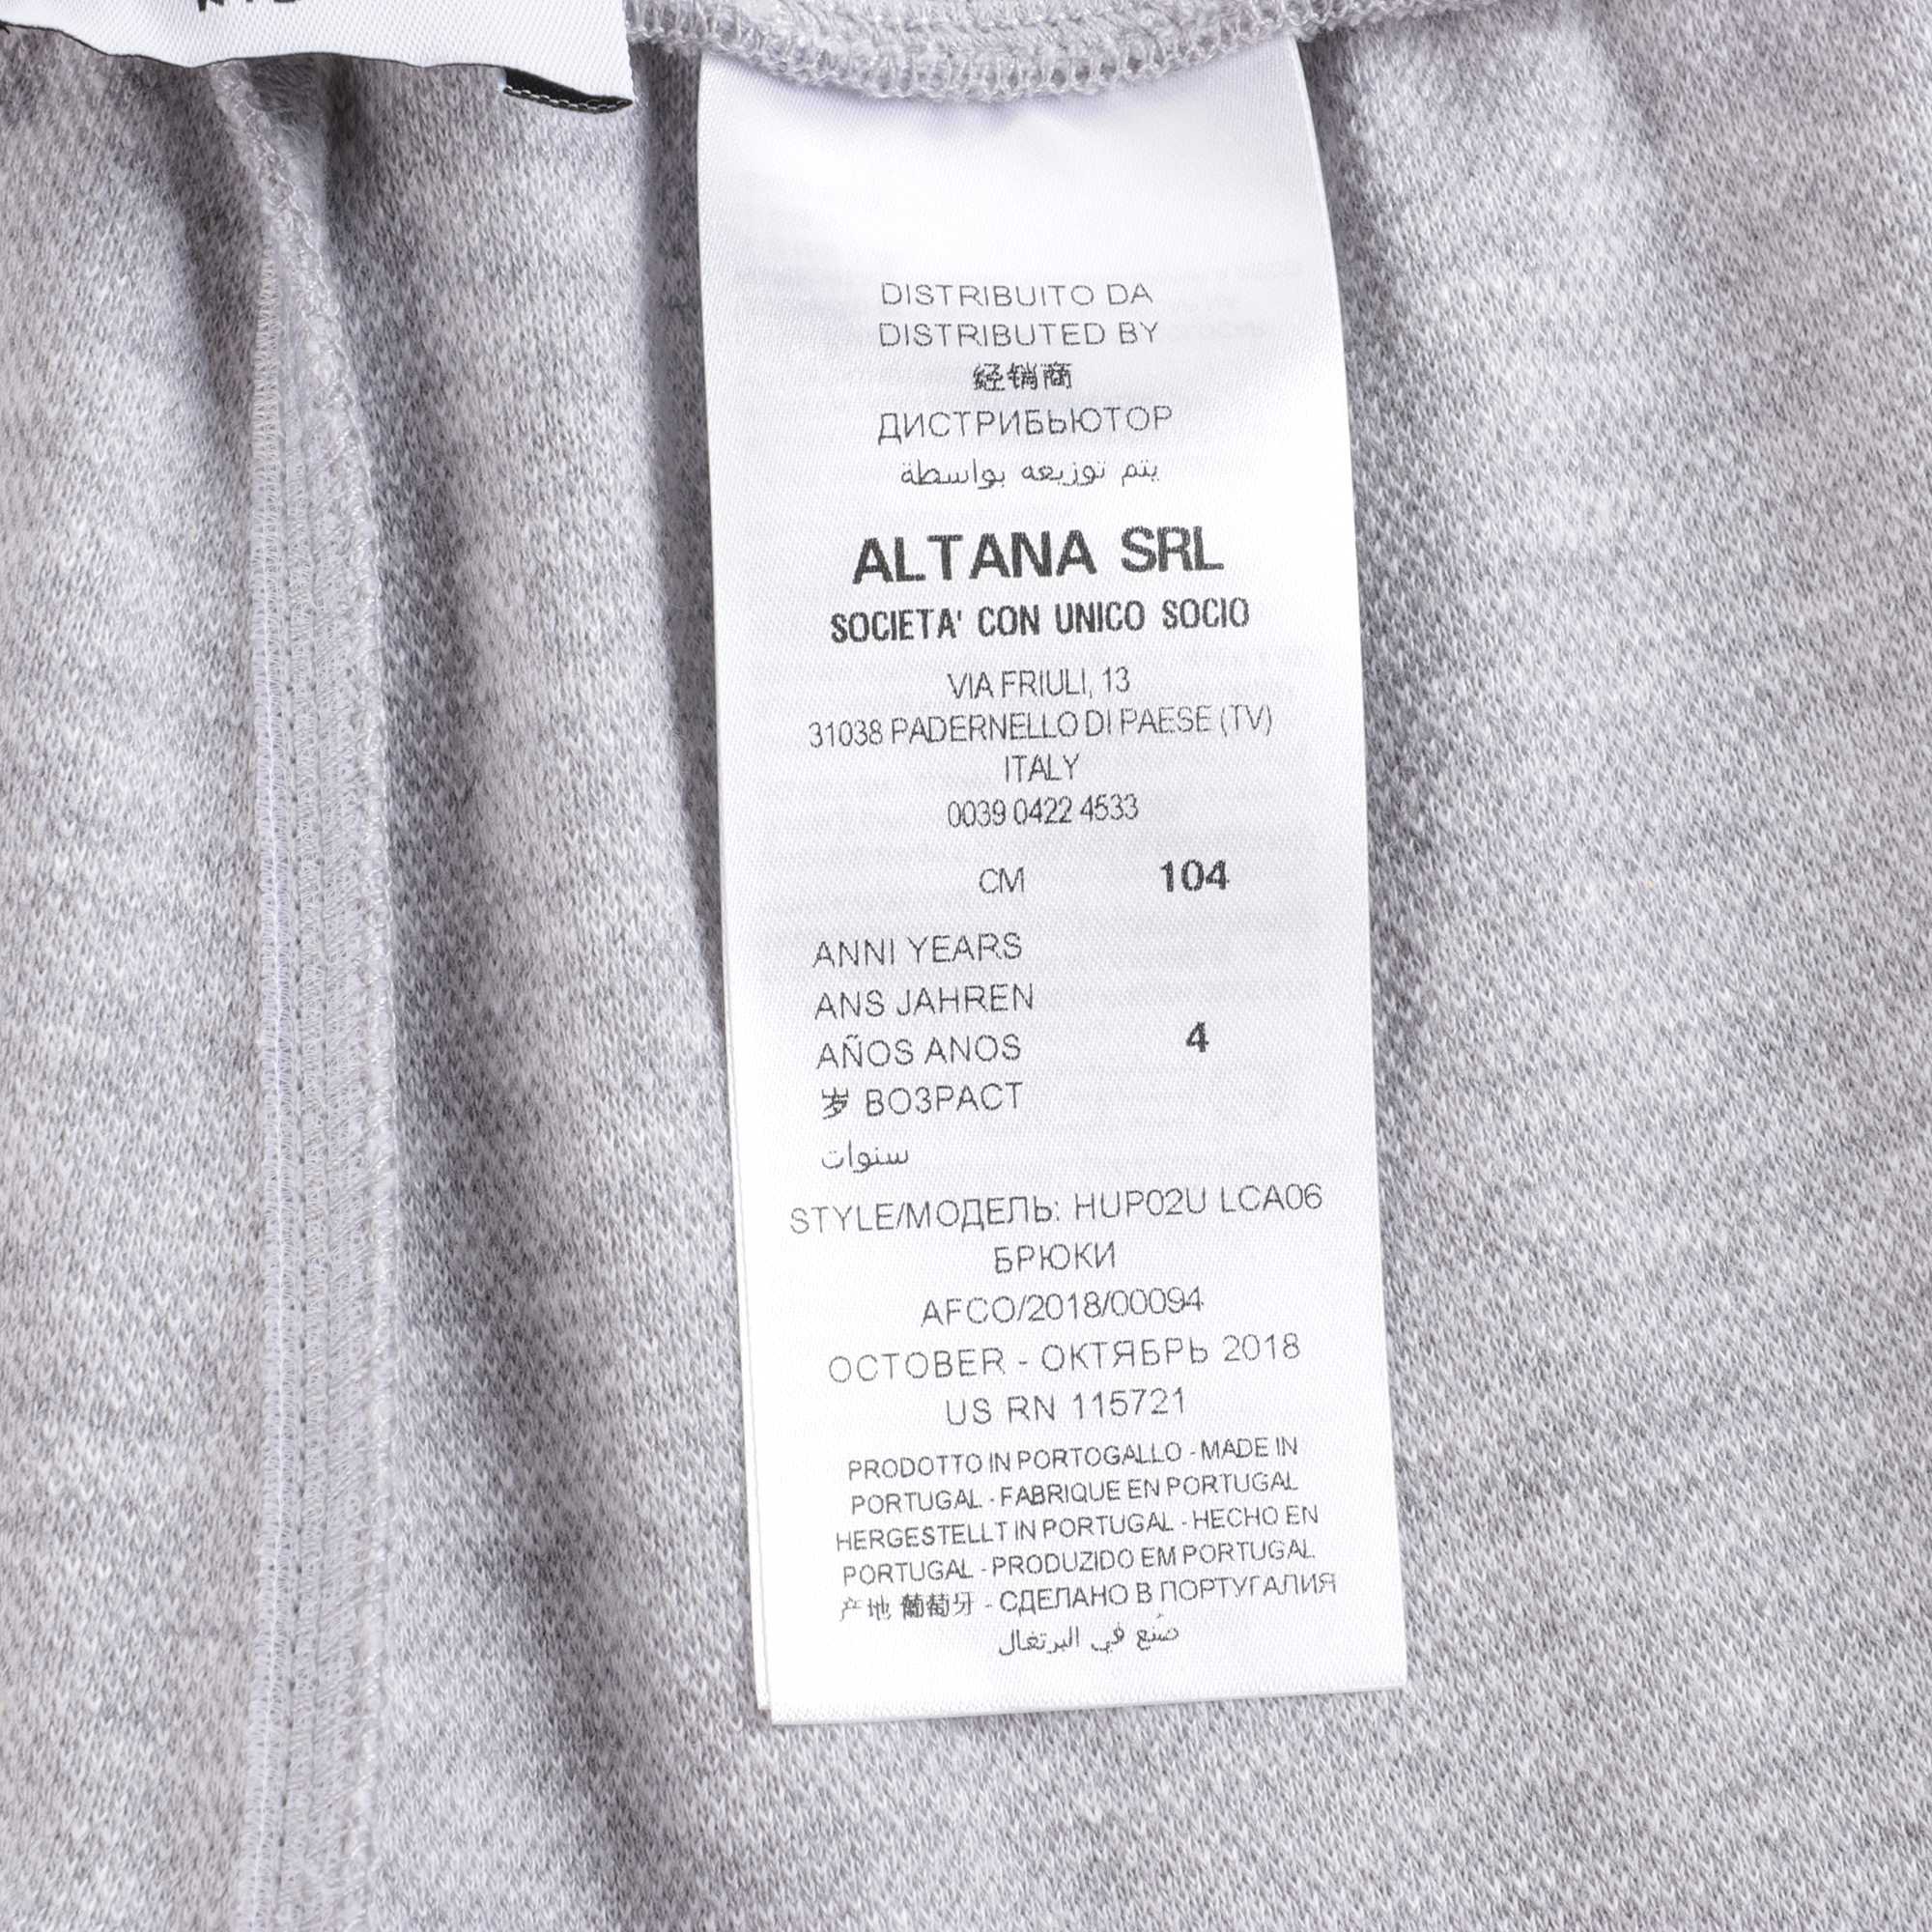 Boys Grey Logo Cotton Trousers